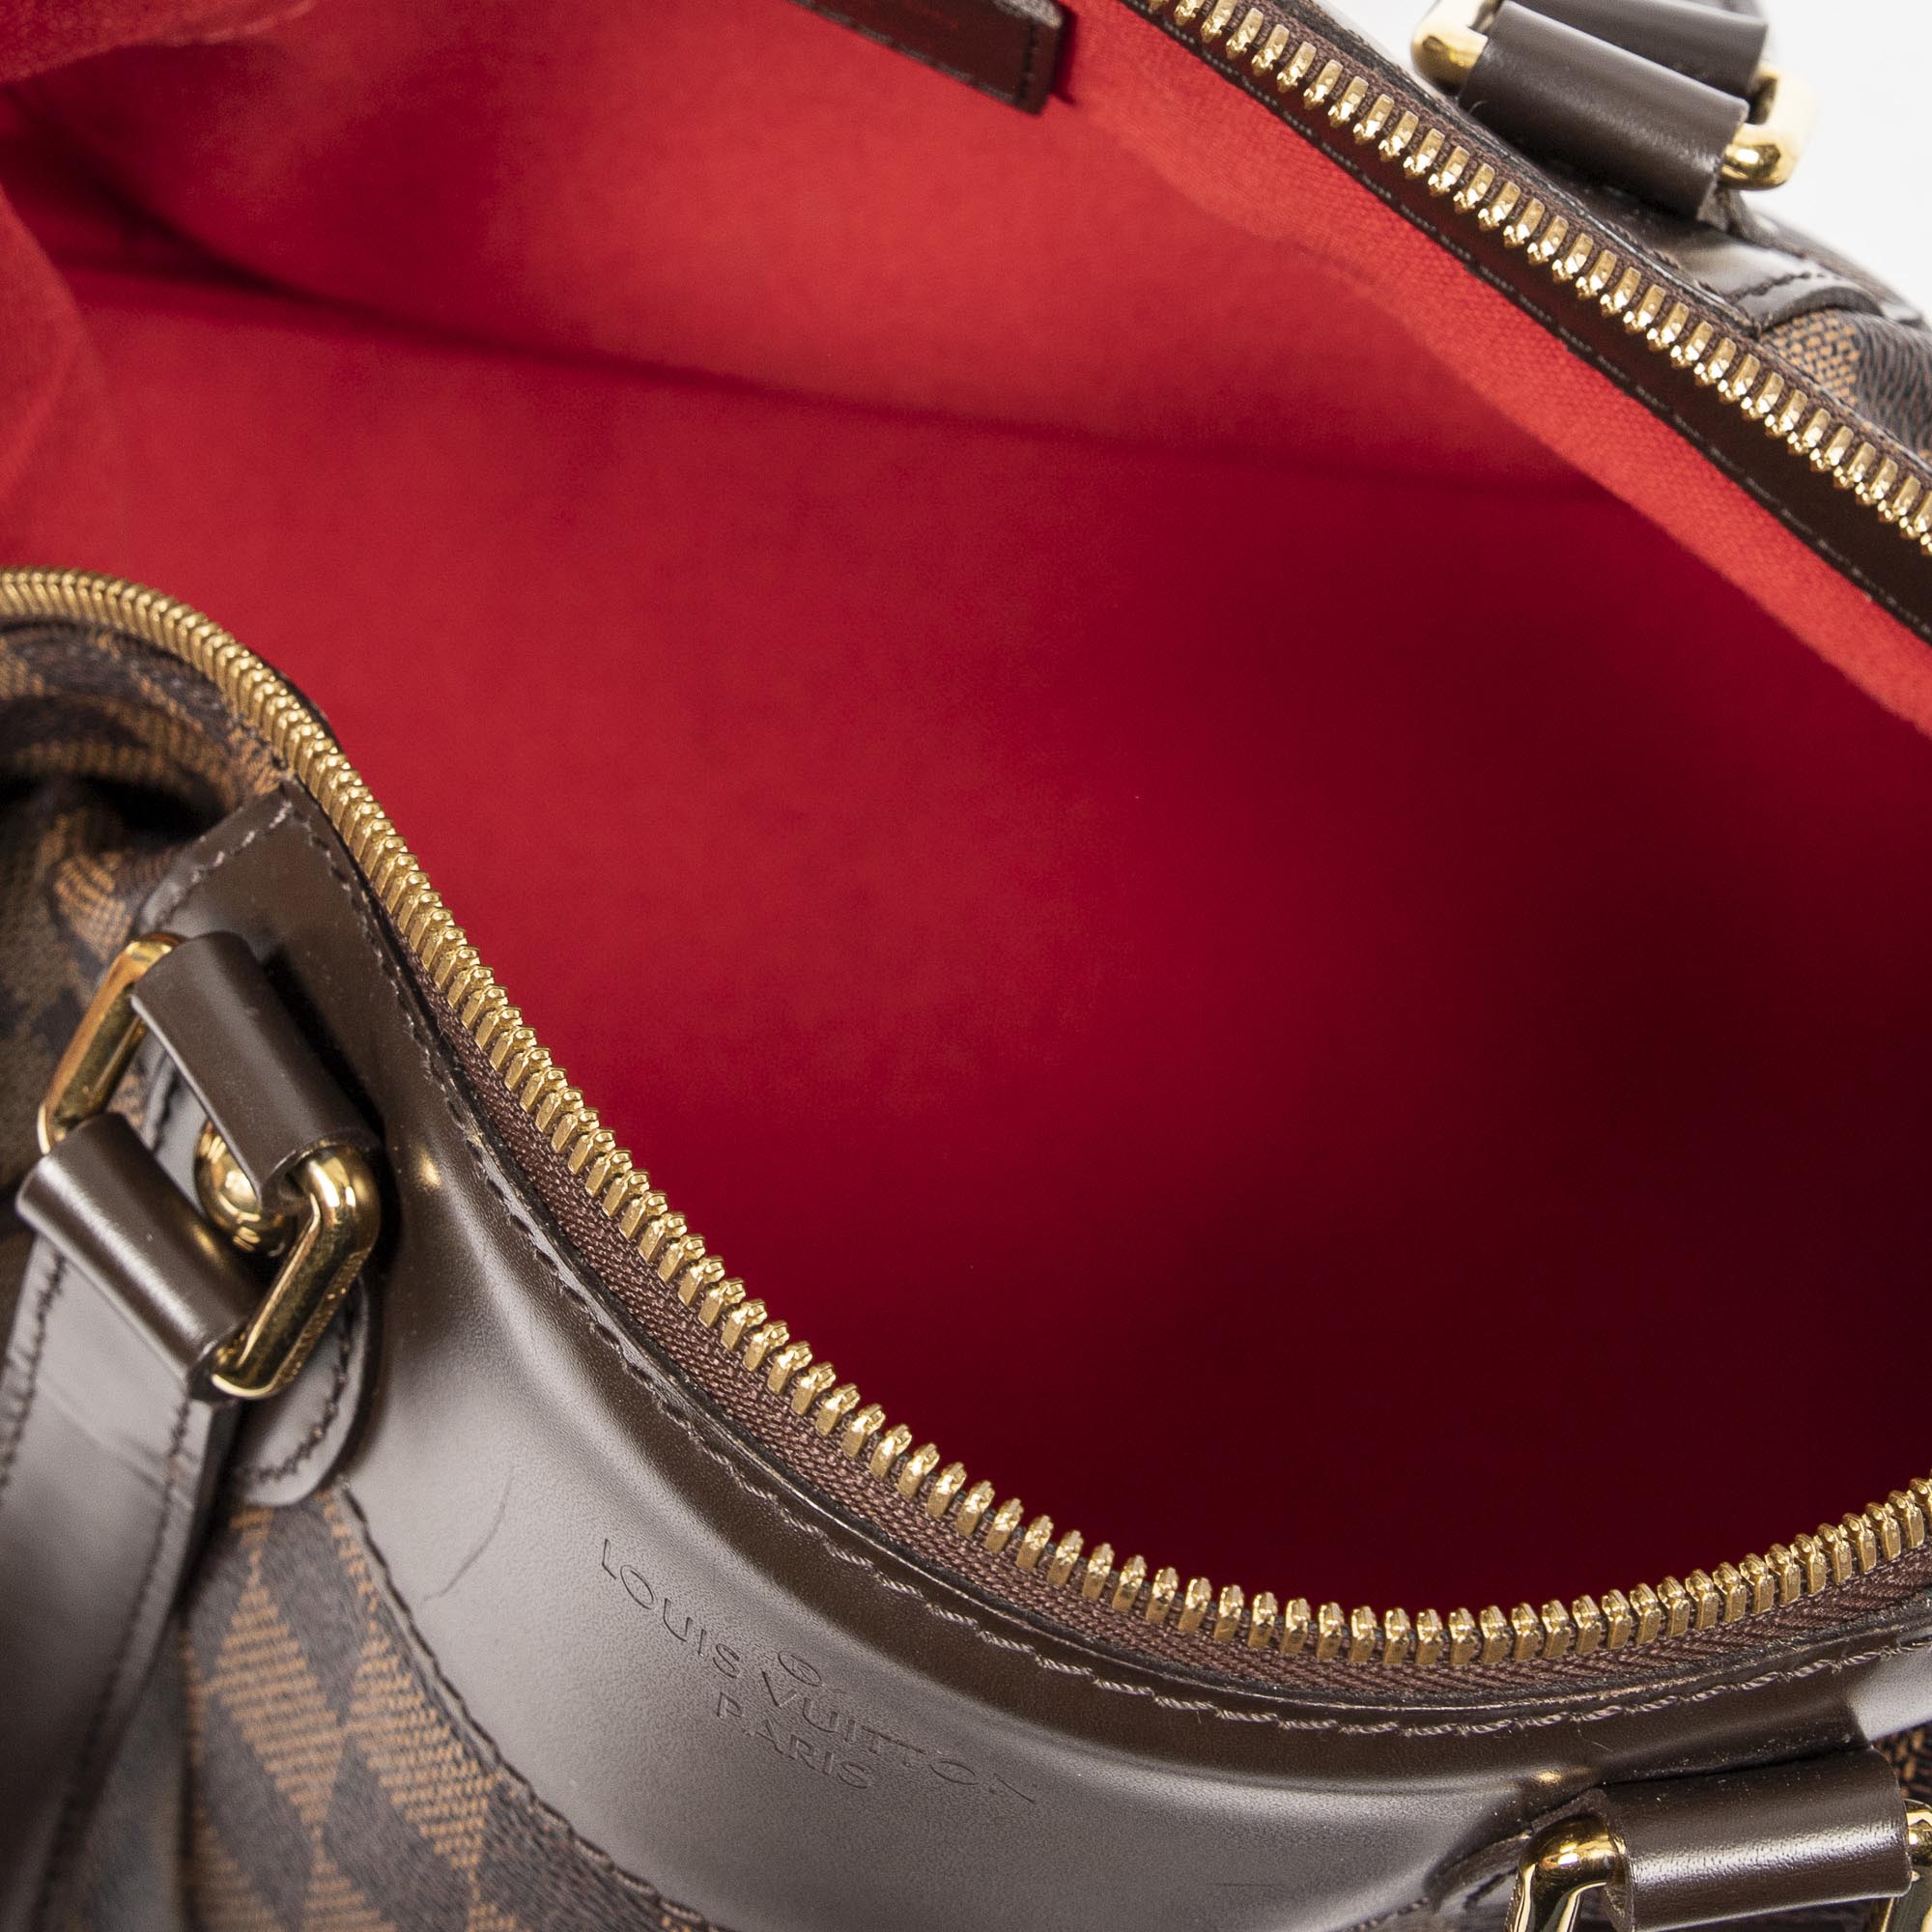 Louis Vuitton Verona PM Damier Ebene Canvas Shoulder Bag on SALE